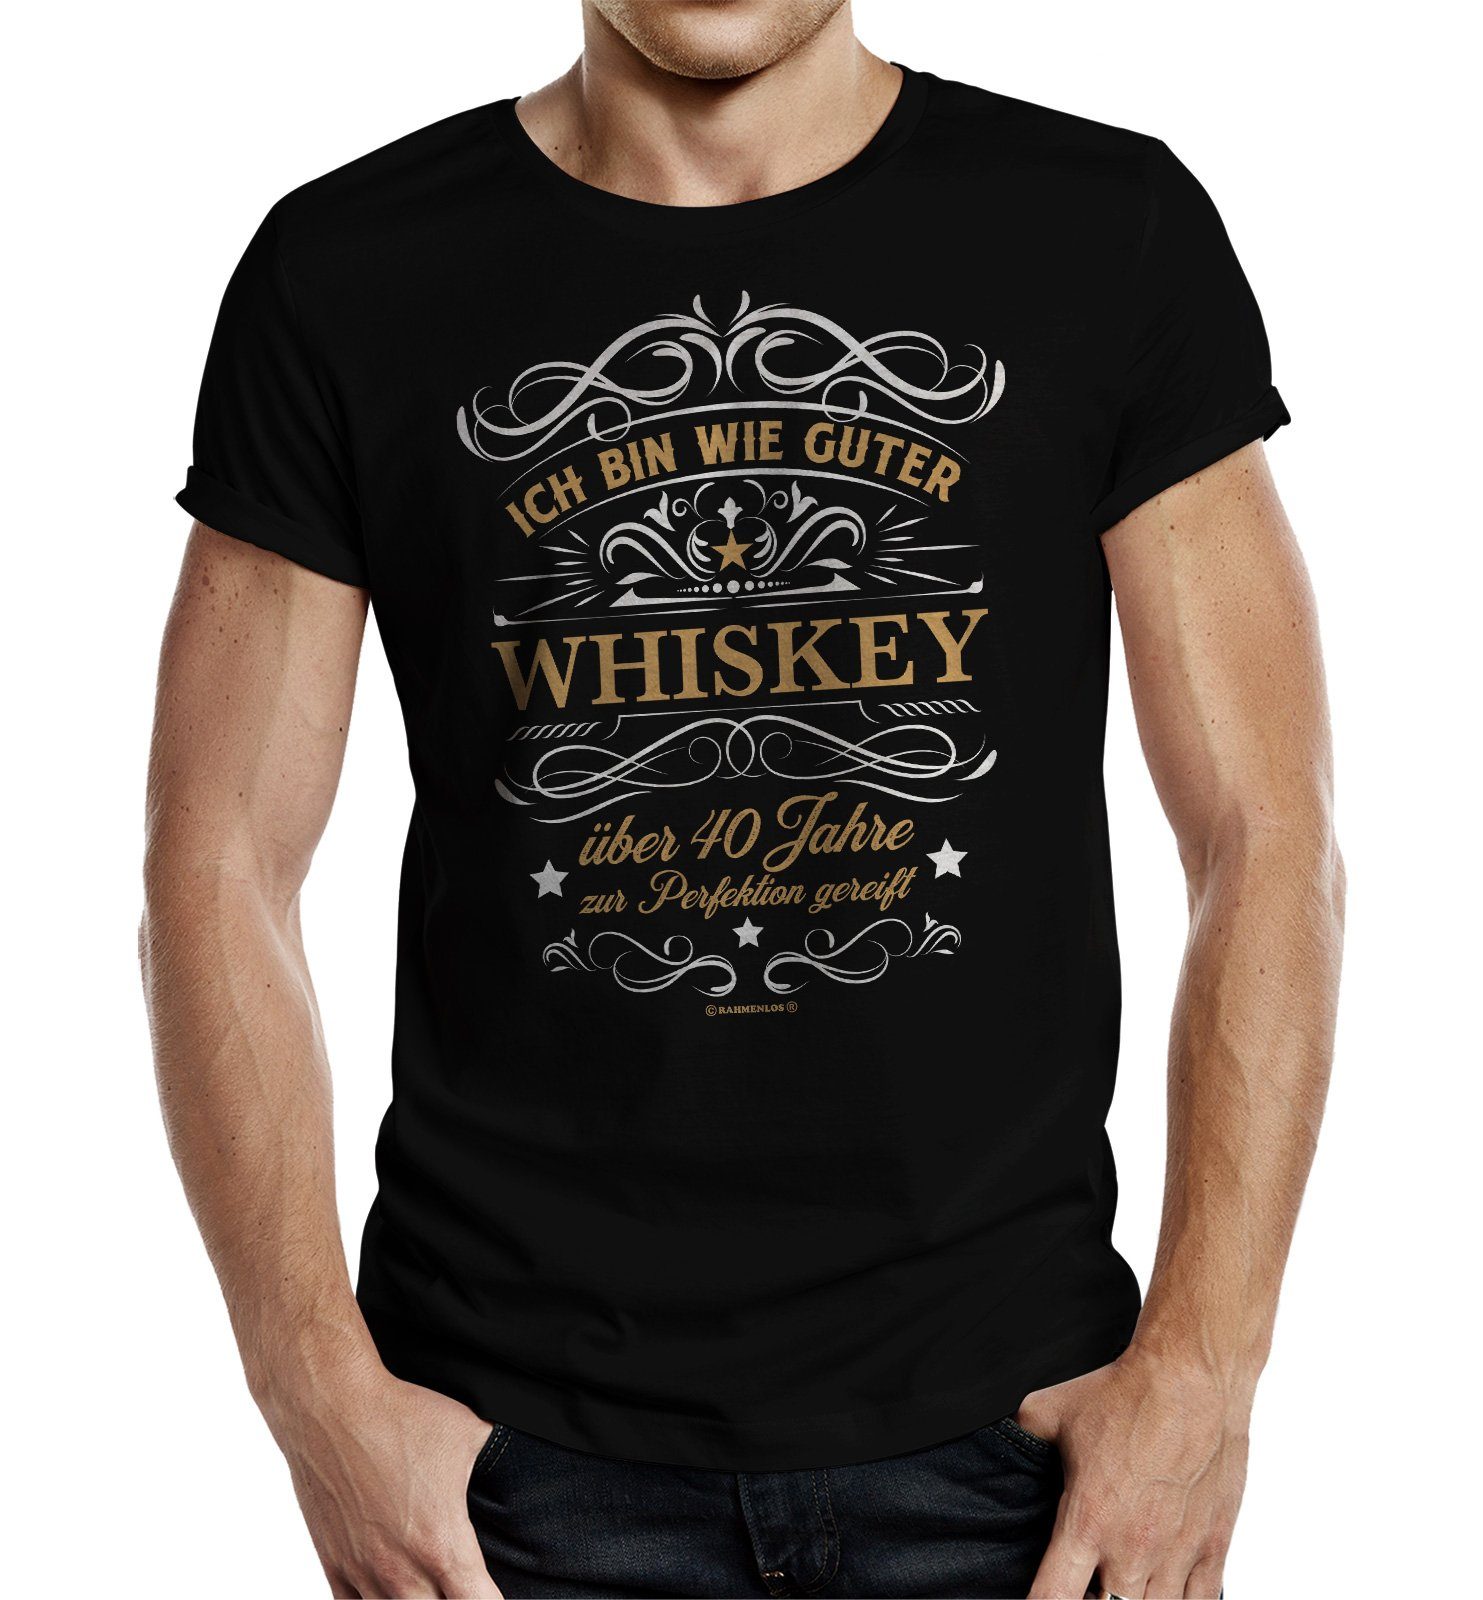 RAHMENLOS® T-Shirt Geschenk zum 40. Geburtstag - wie guter Whiskey 40 Jahre gereift